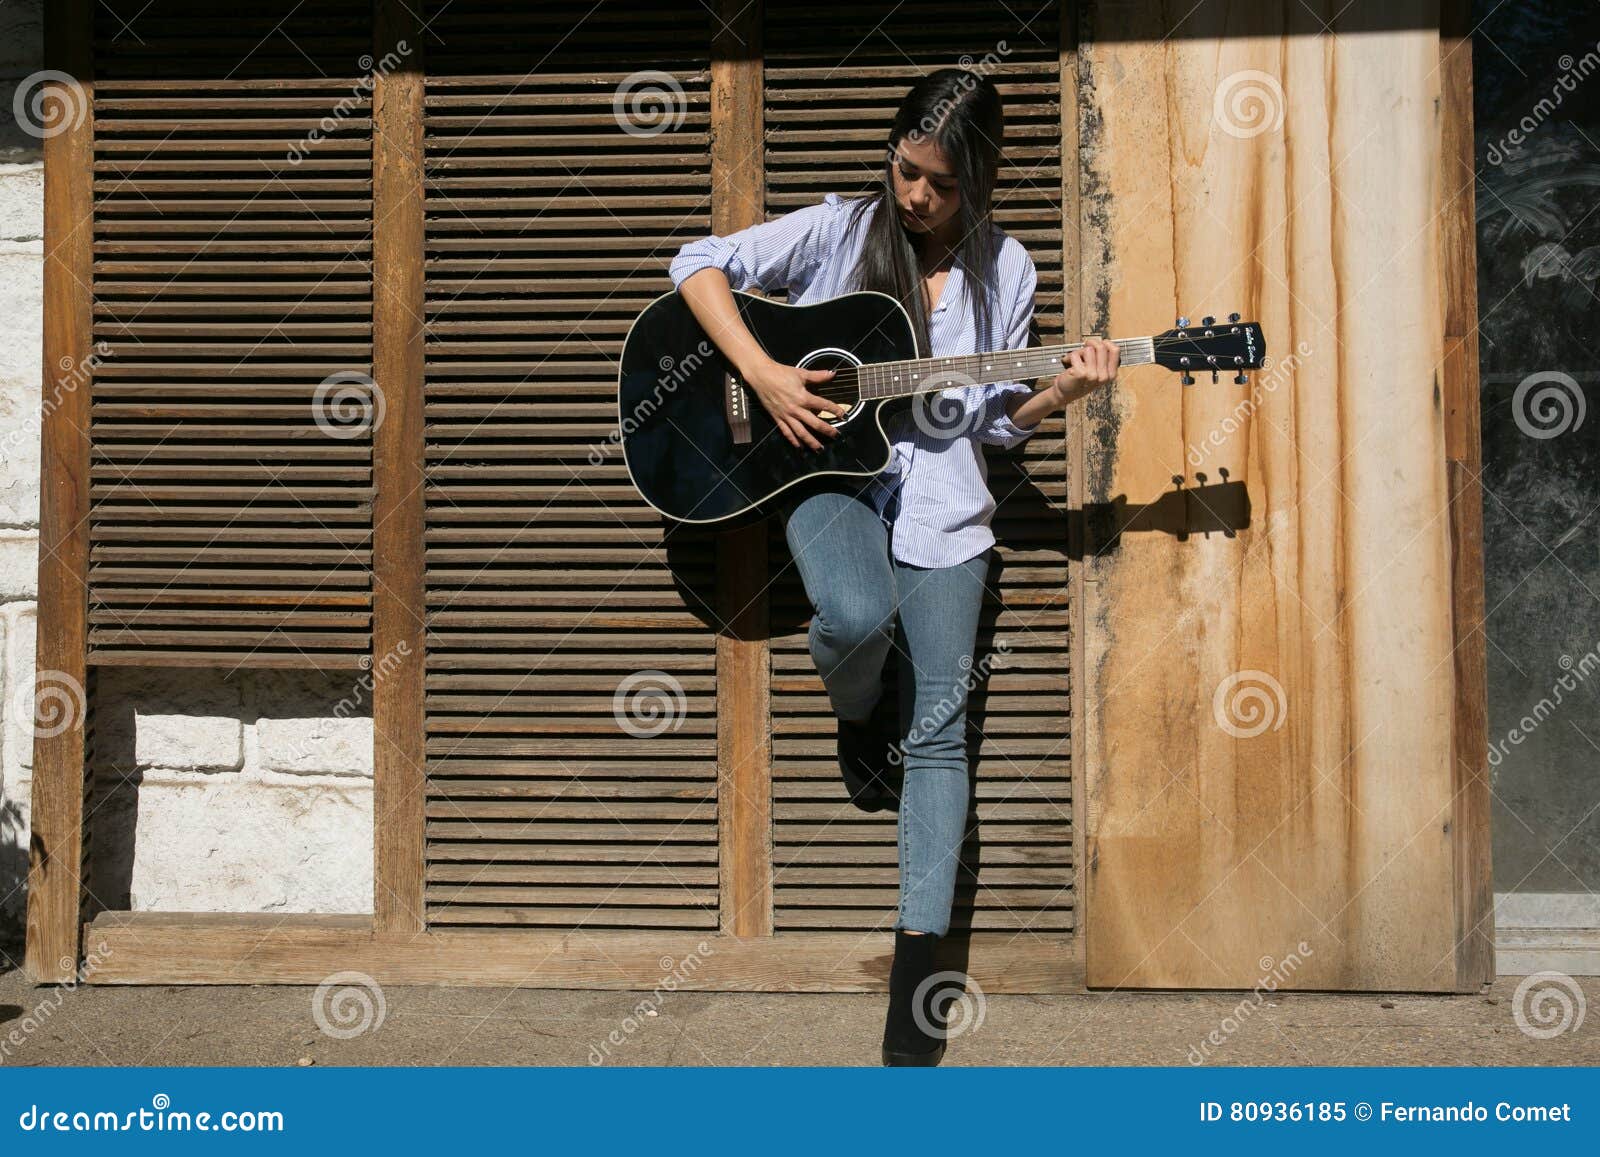 Pose De Fille Avec Une Guitare Image stock - Image du roche, musicien:  80936185